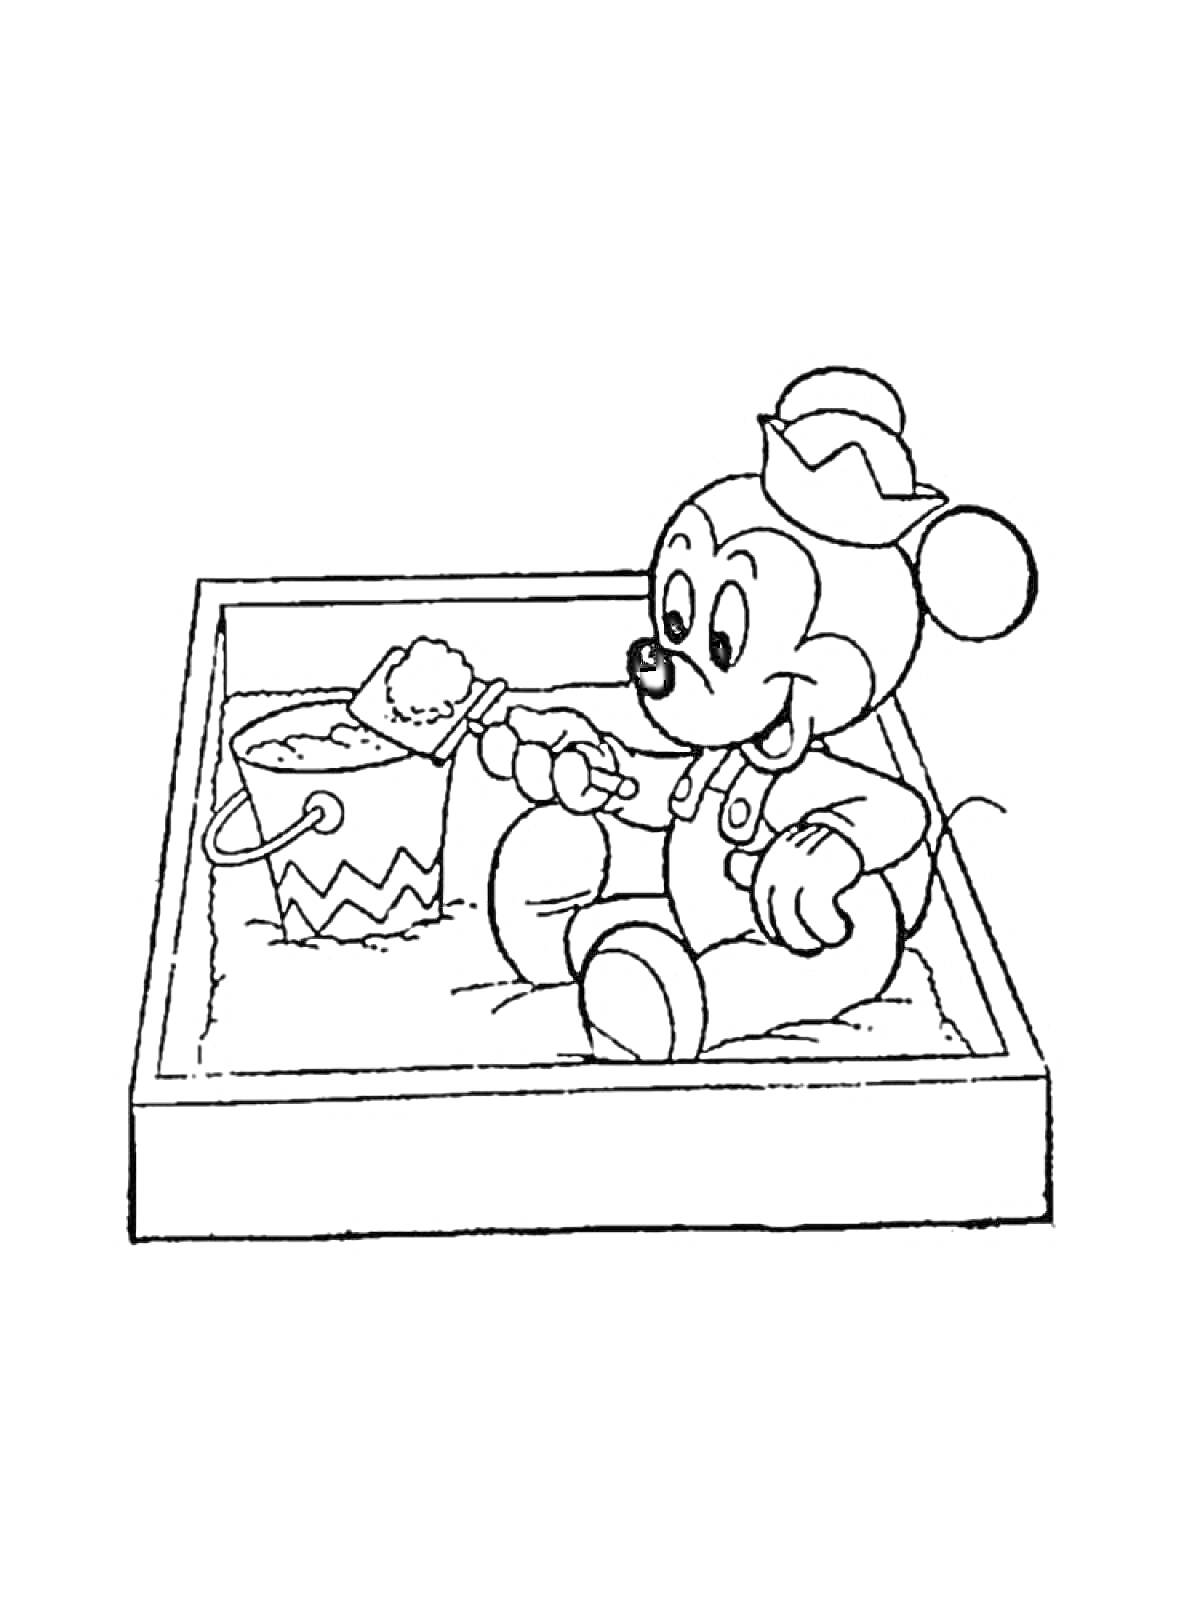 Рисунок с мышонком в песочнице, держащего лопатку и ведёрко